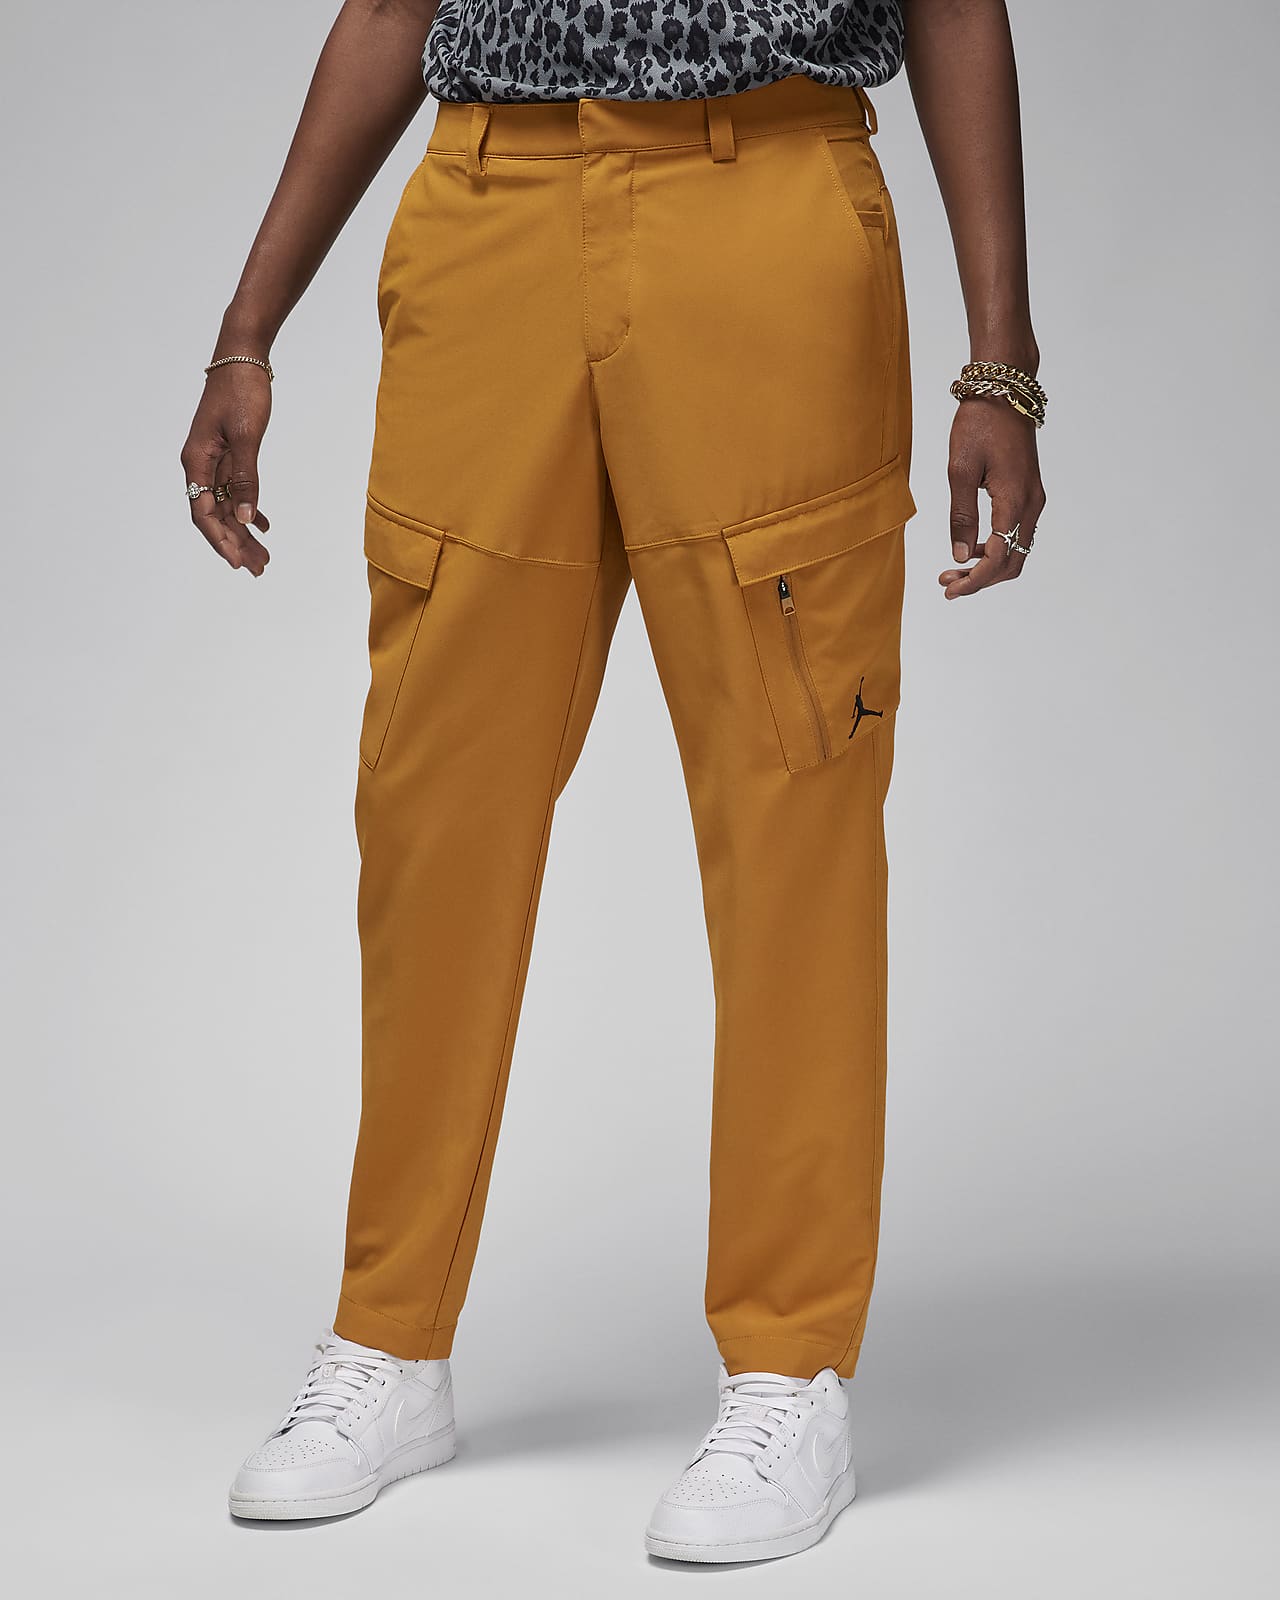 Men's Jordan Essentials Baseline Fleece Pants| Finish Line